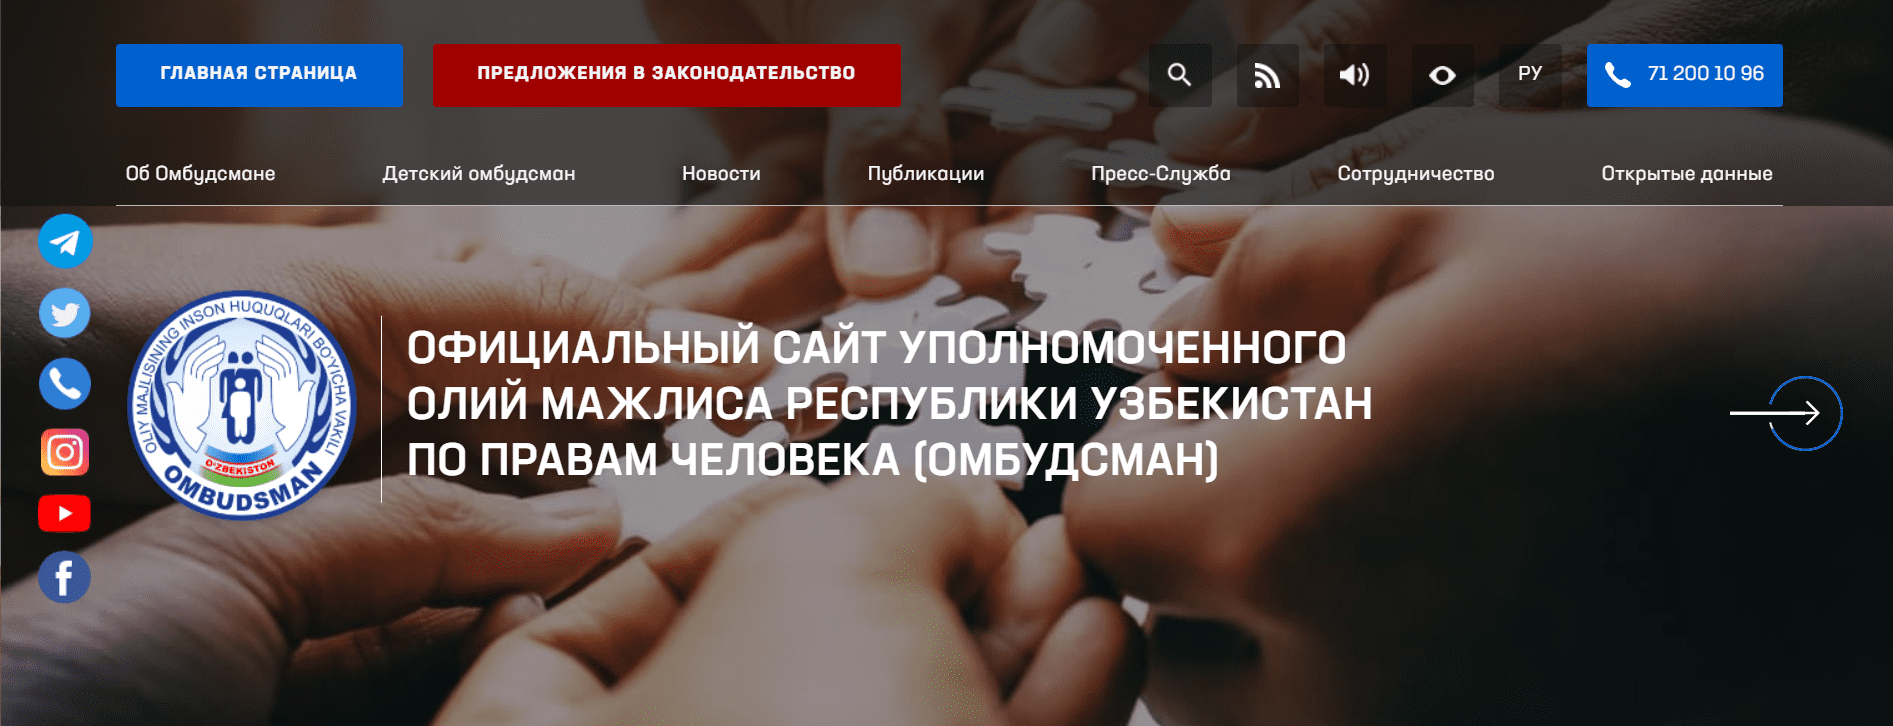 Олий Мажлиса Республики Узбекистан (ombudsman.uz) - официальный сайт